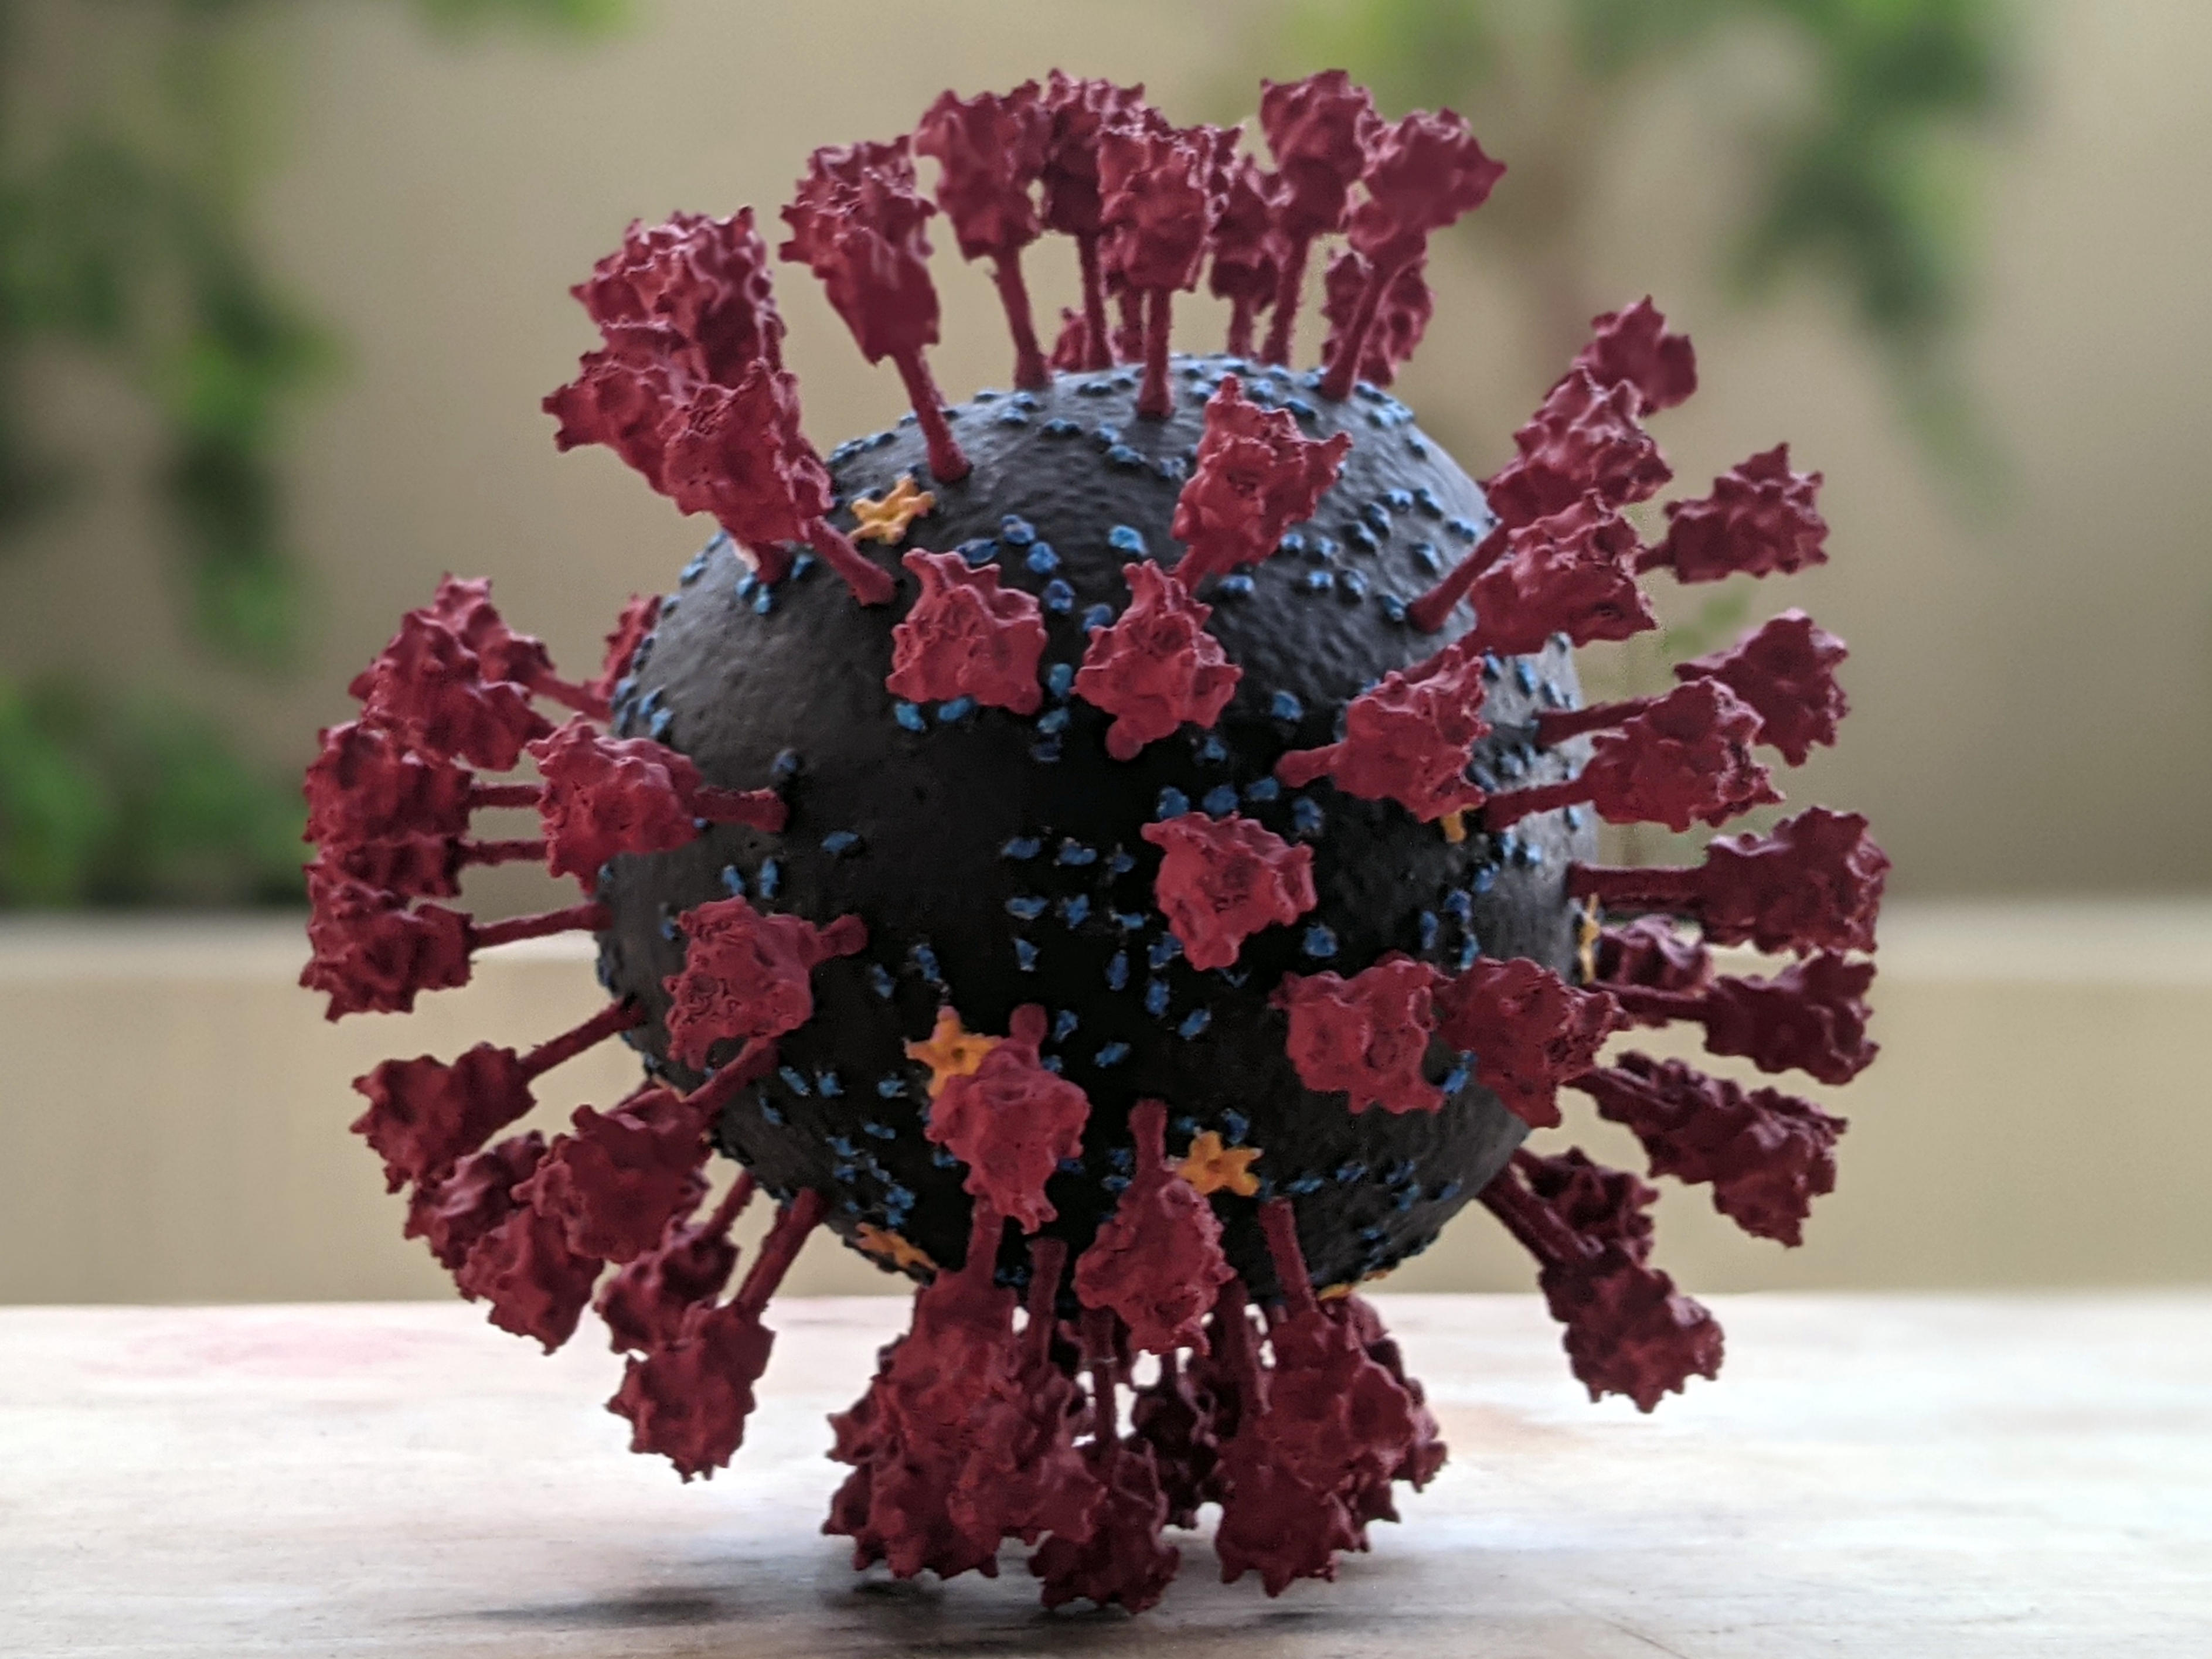 glamour shot of the coronavirus